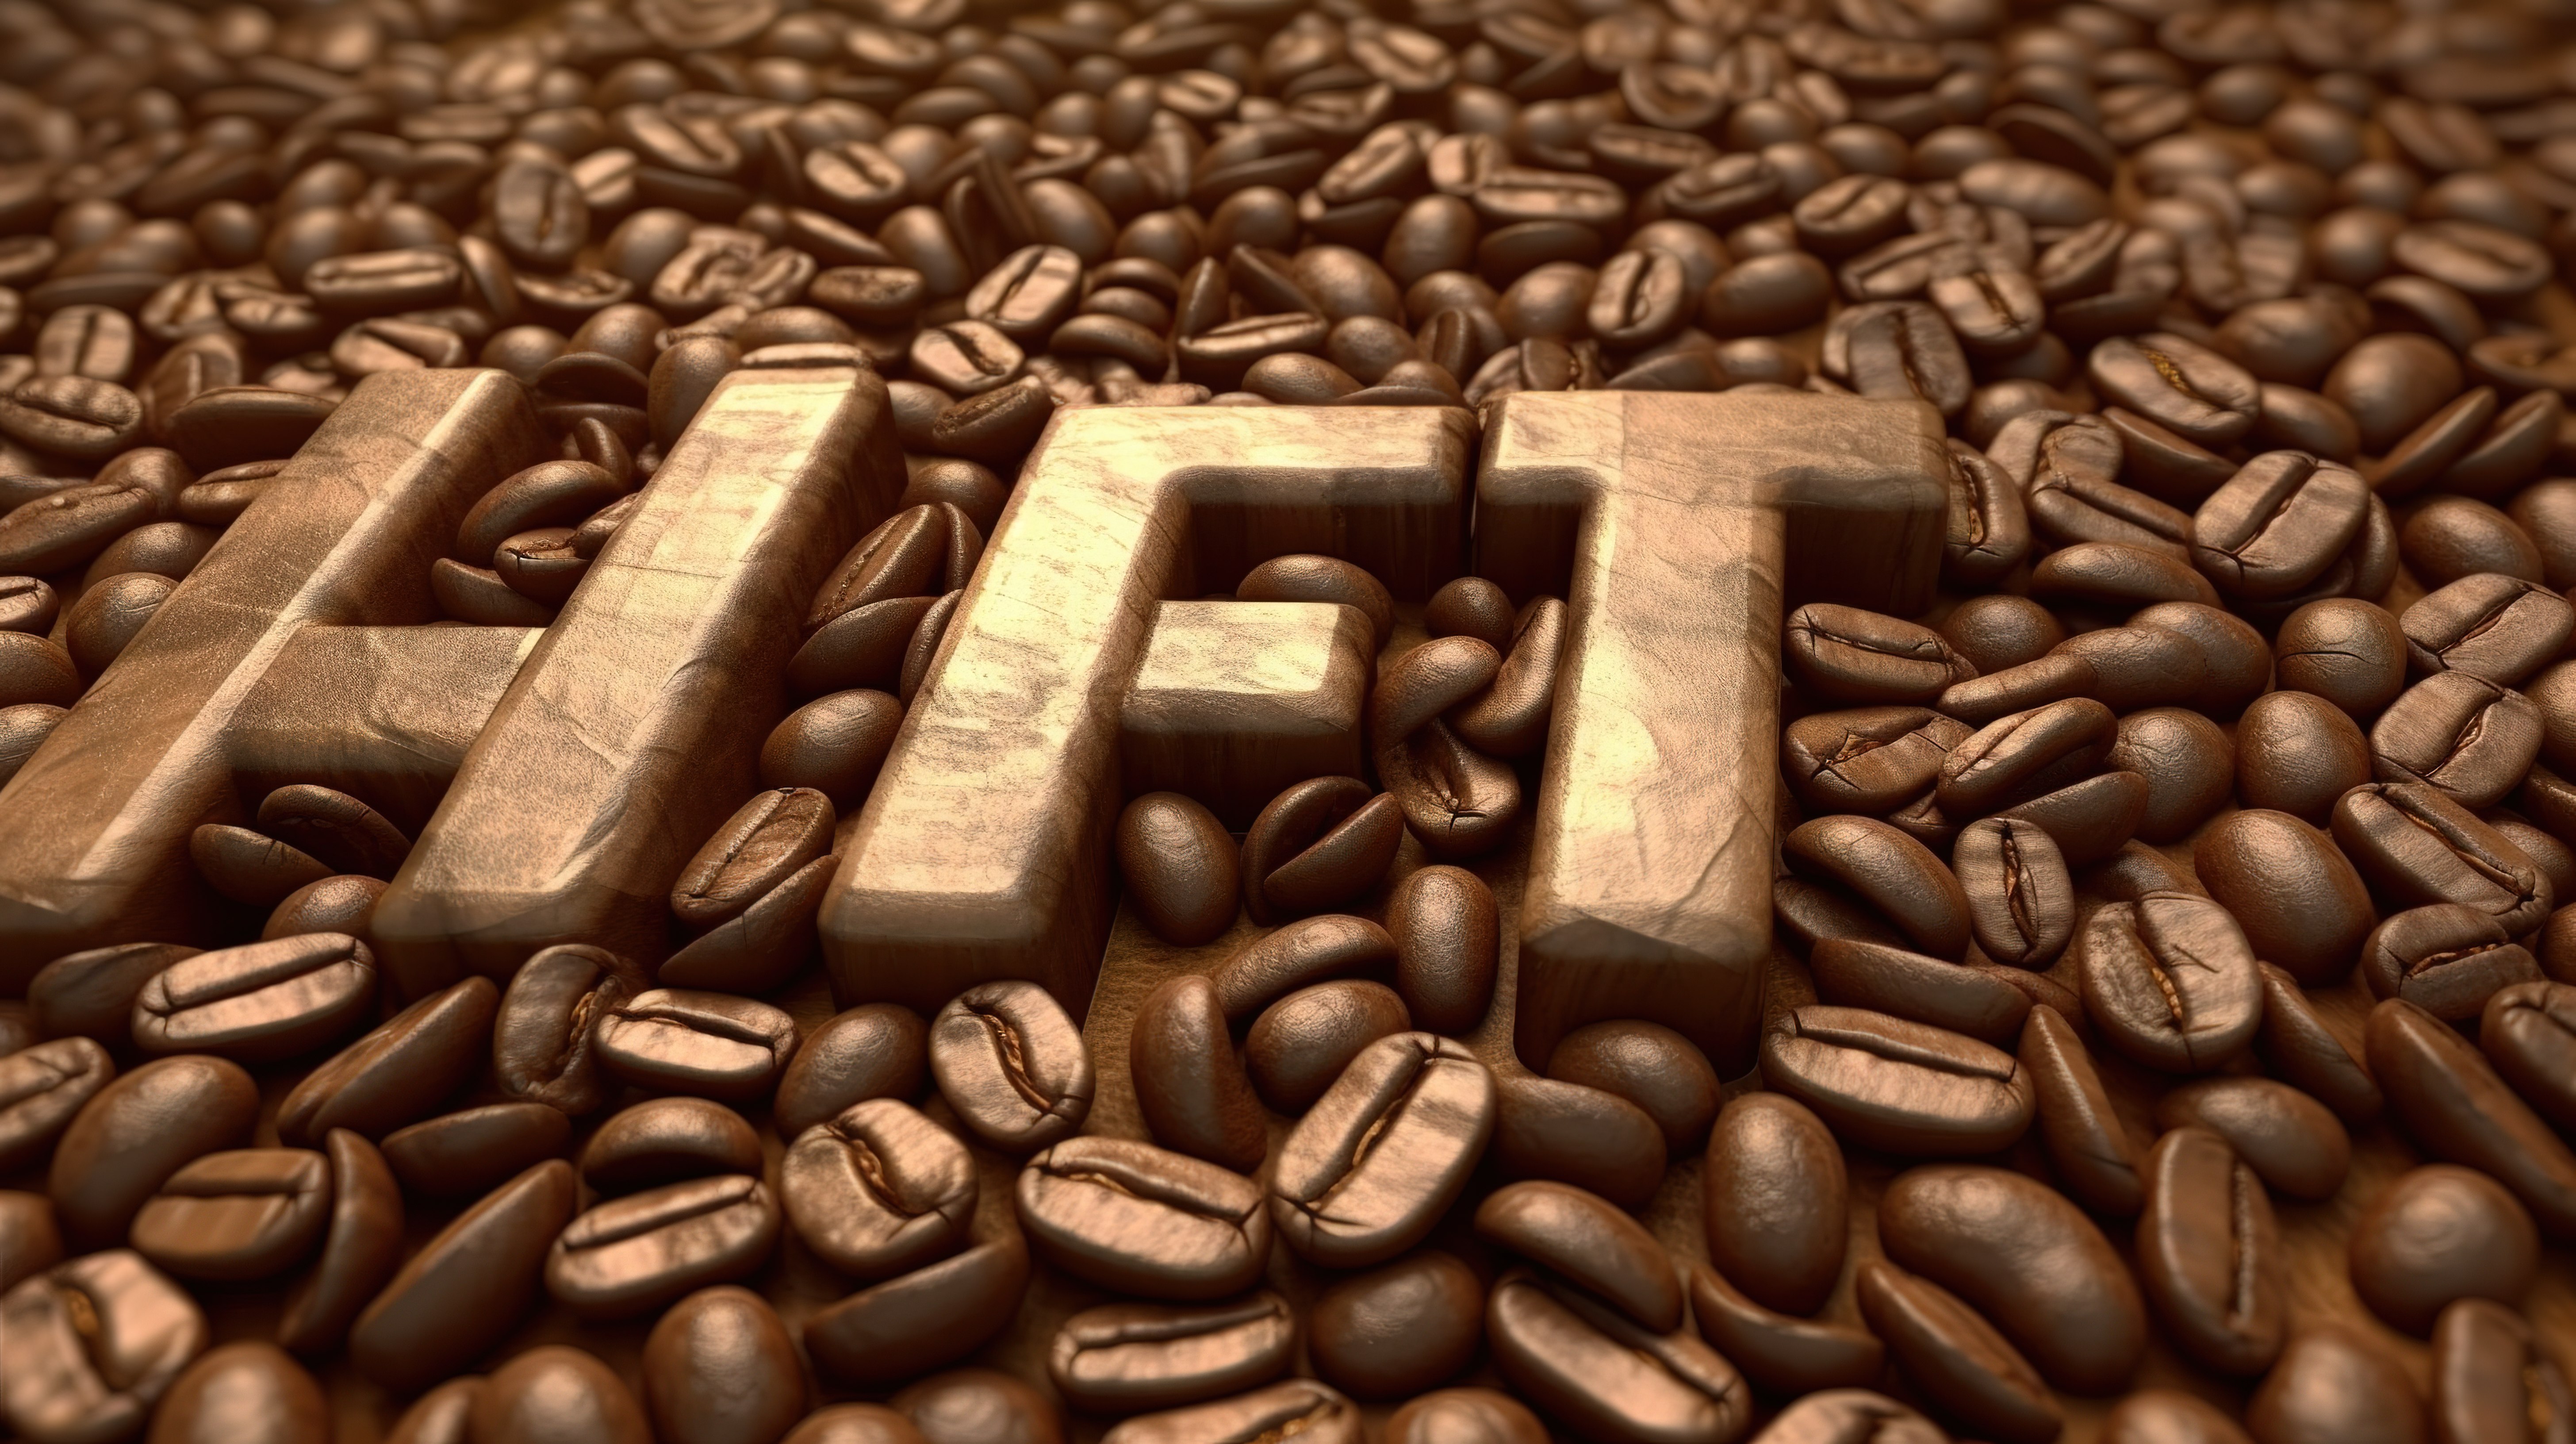 3d 渲染的咖啡豆拼出“能量”这个词图片